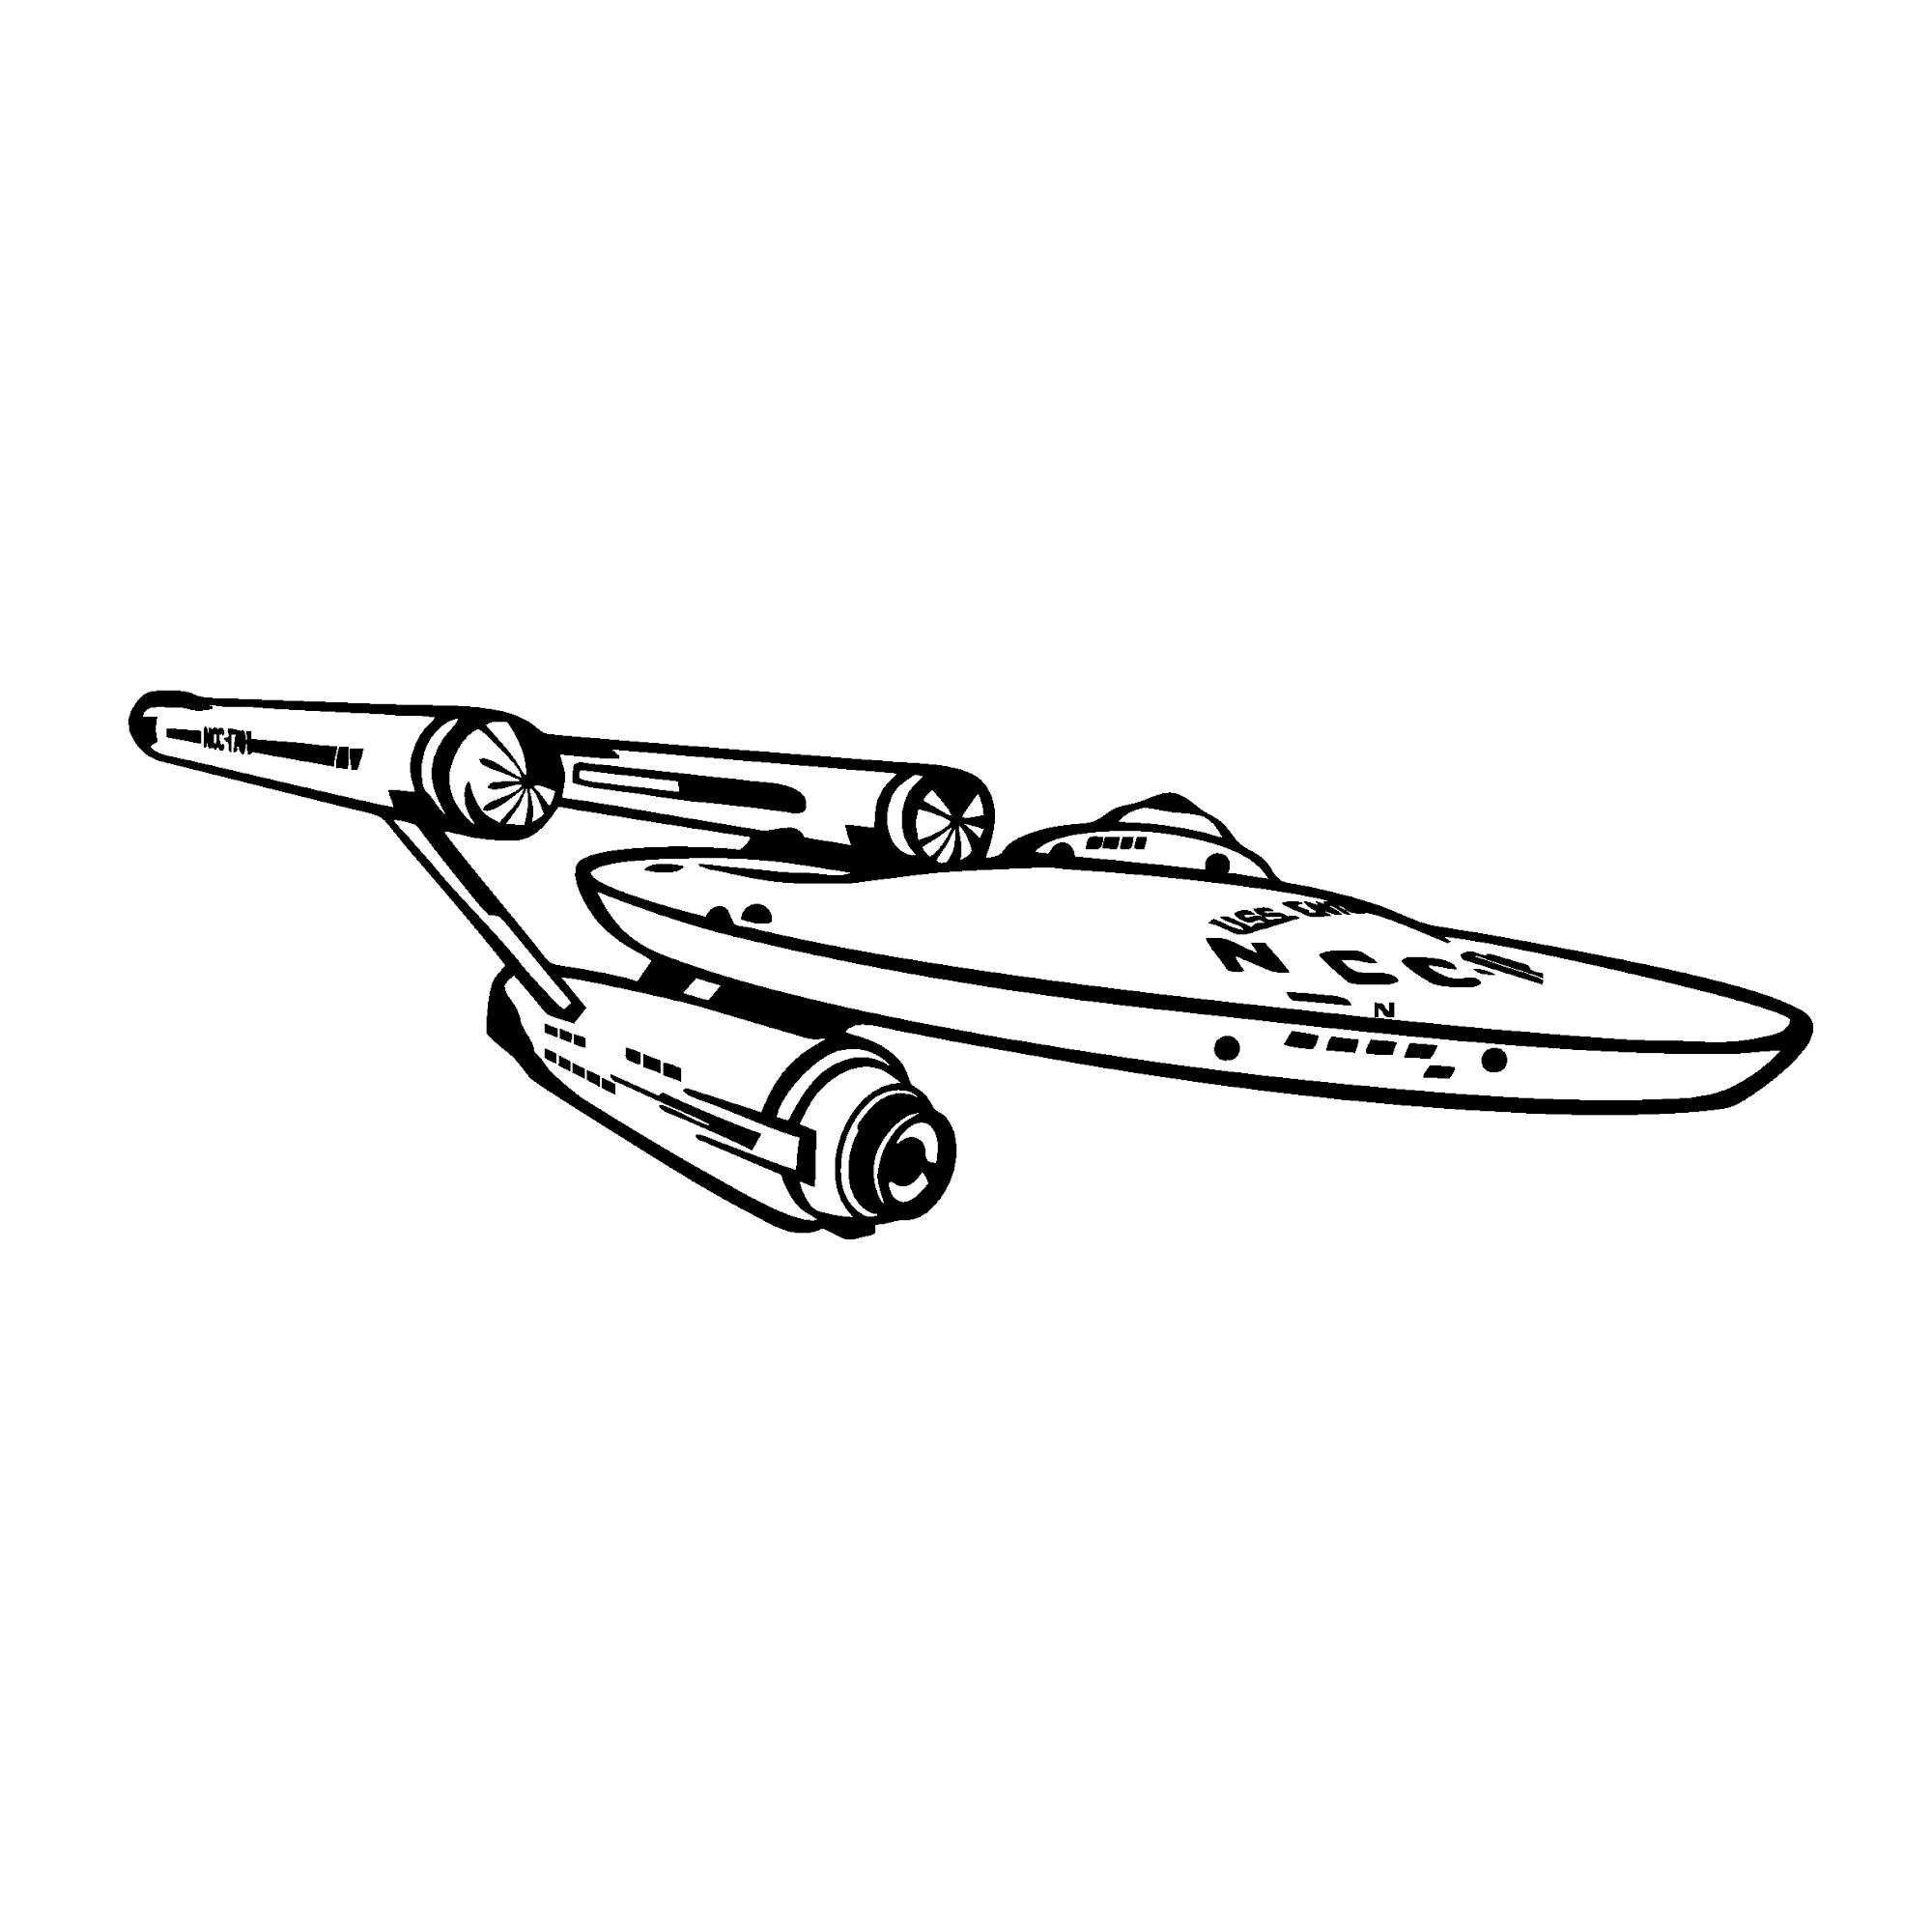 Star Trek- Schriftzug - Raumschiff Enterprise NCC-1701